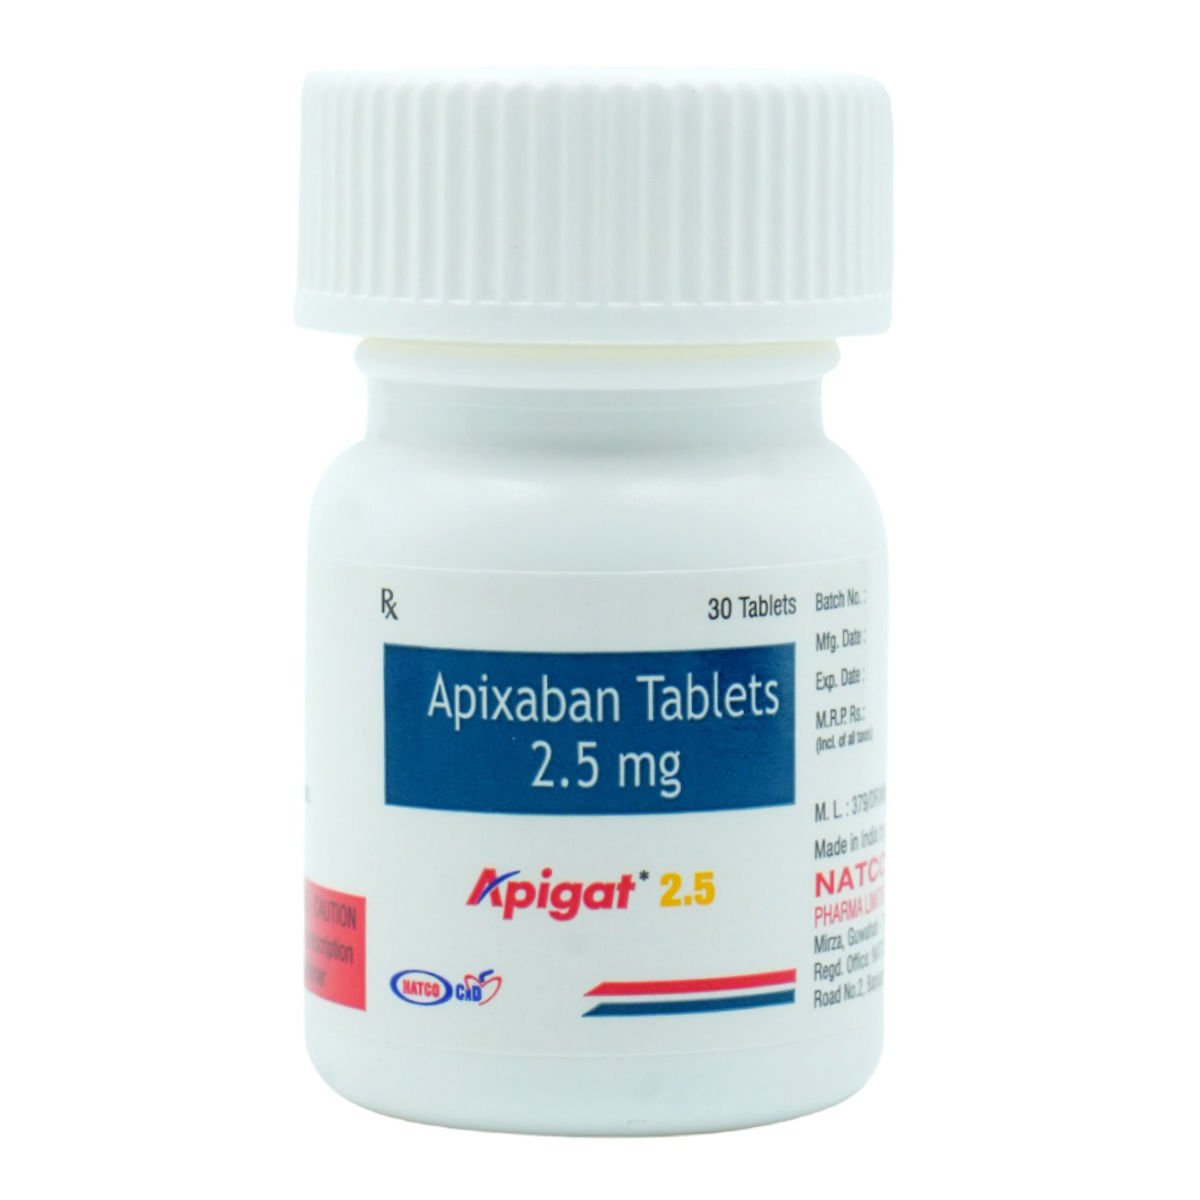 Buy Apigat 2.5 Tablet 30's Online